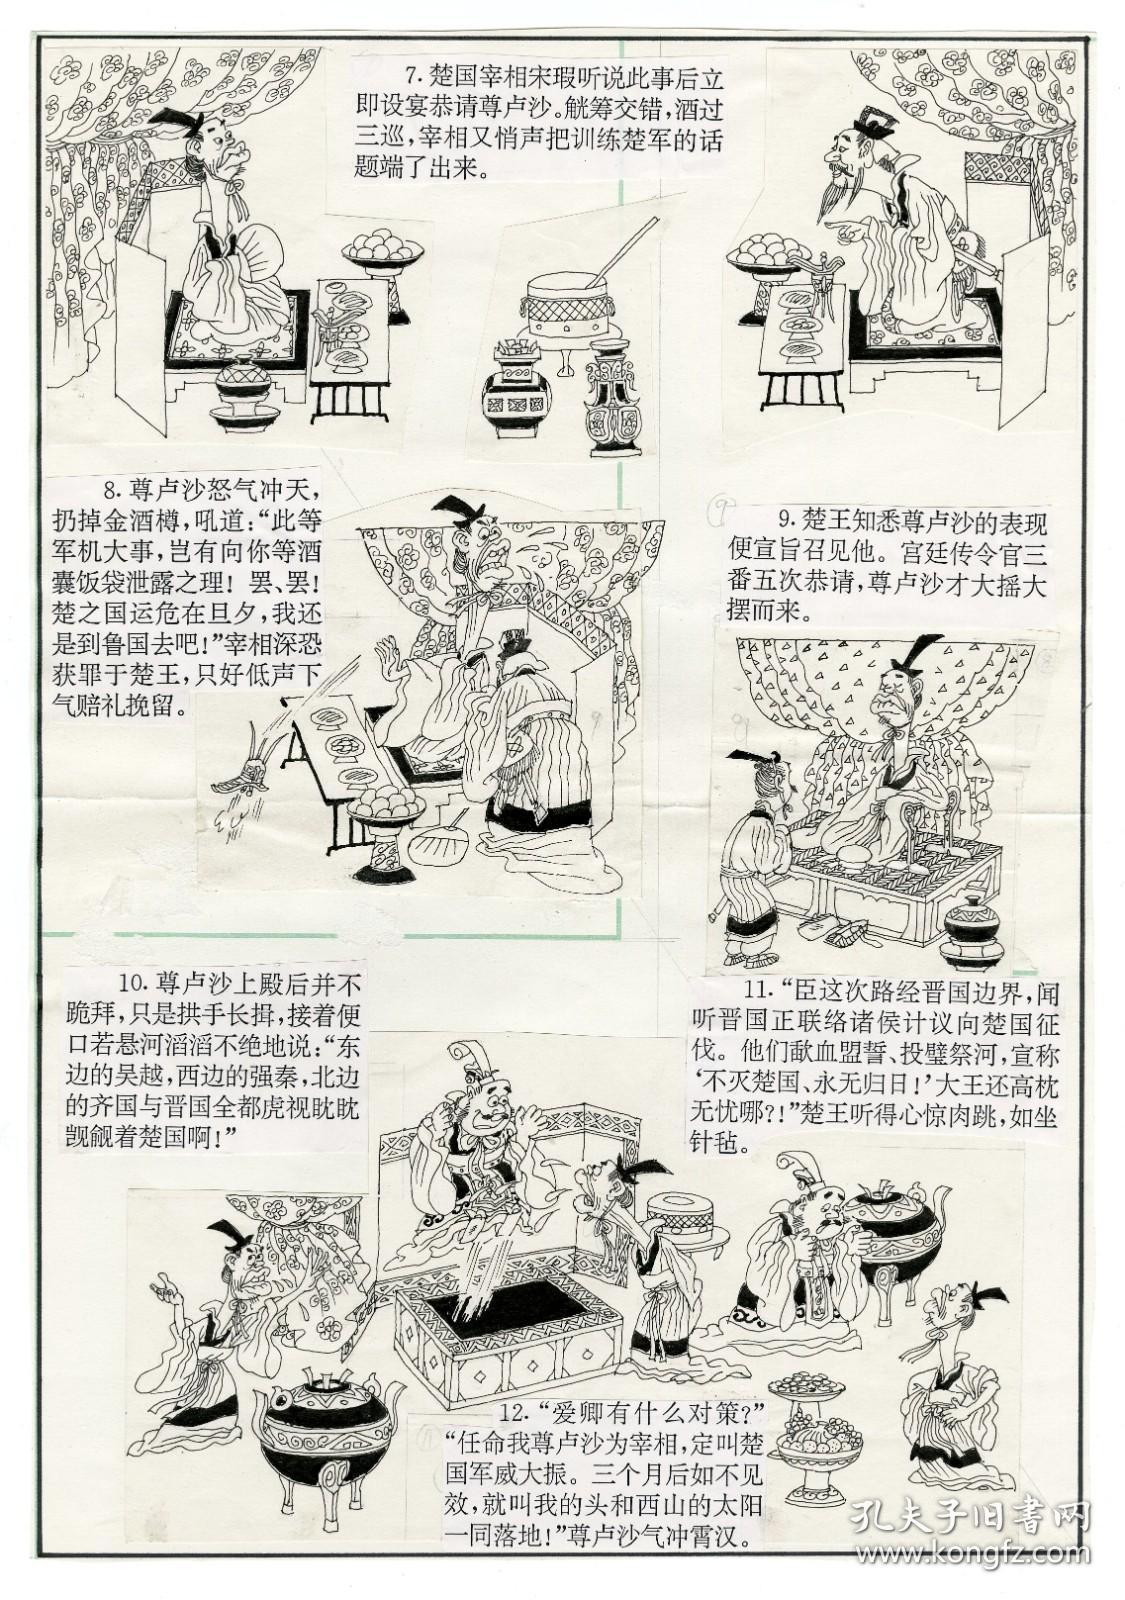 原稿09号——熊孔成，小于八开，3张18图，发表于【幽默大师】1994年3期。3300元。